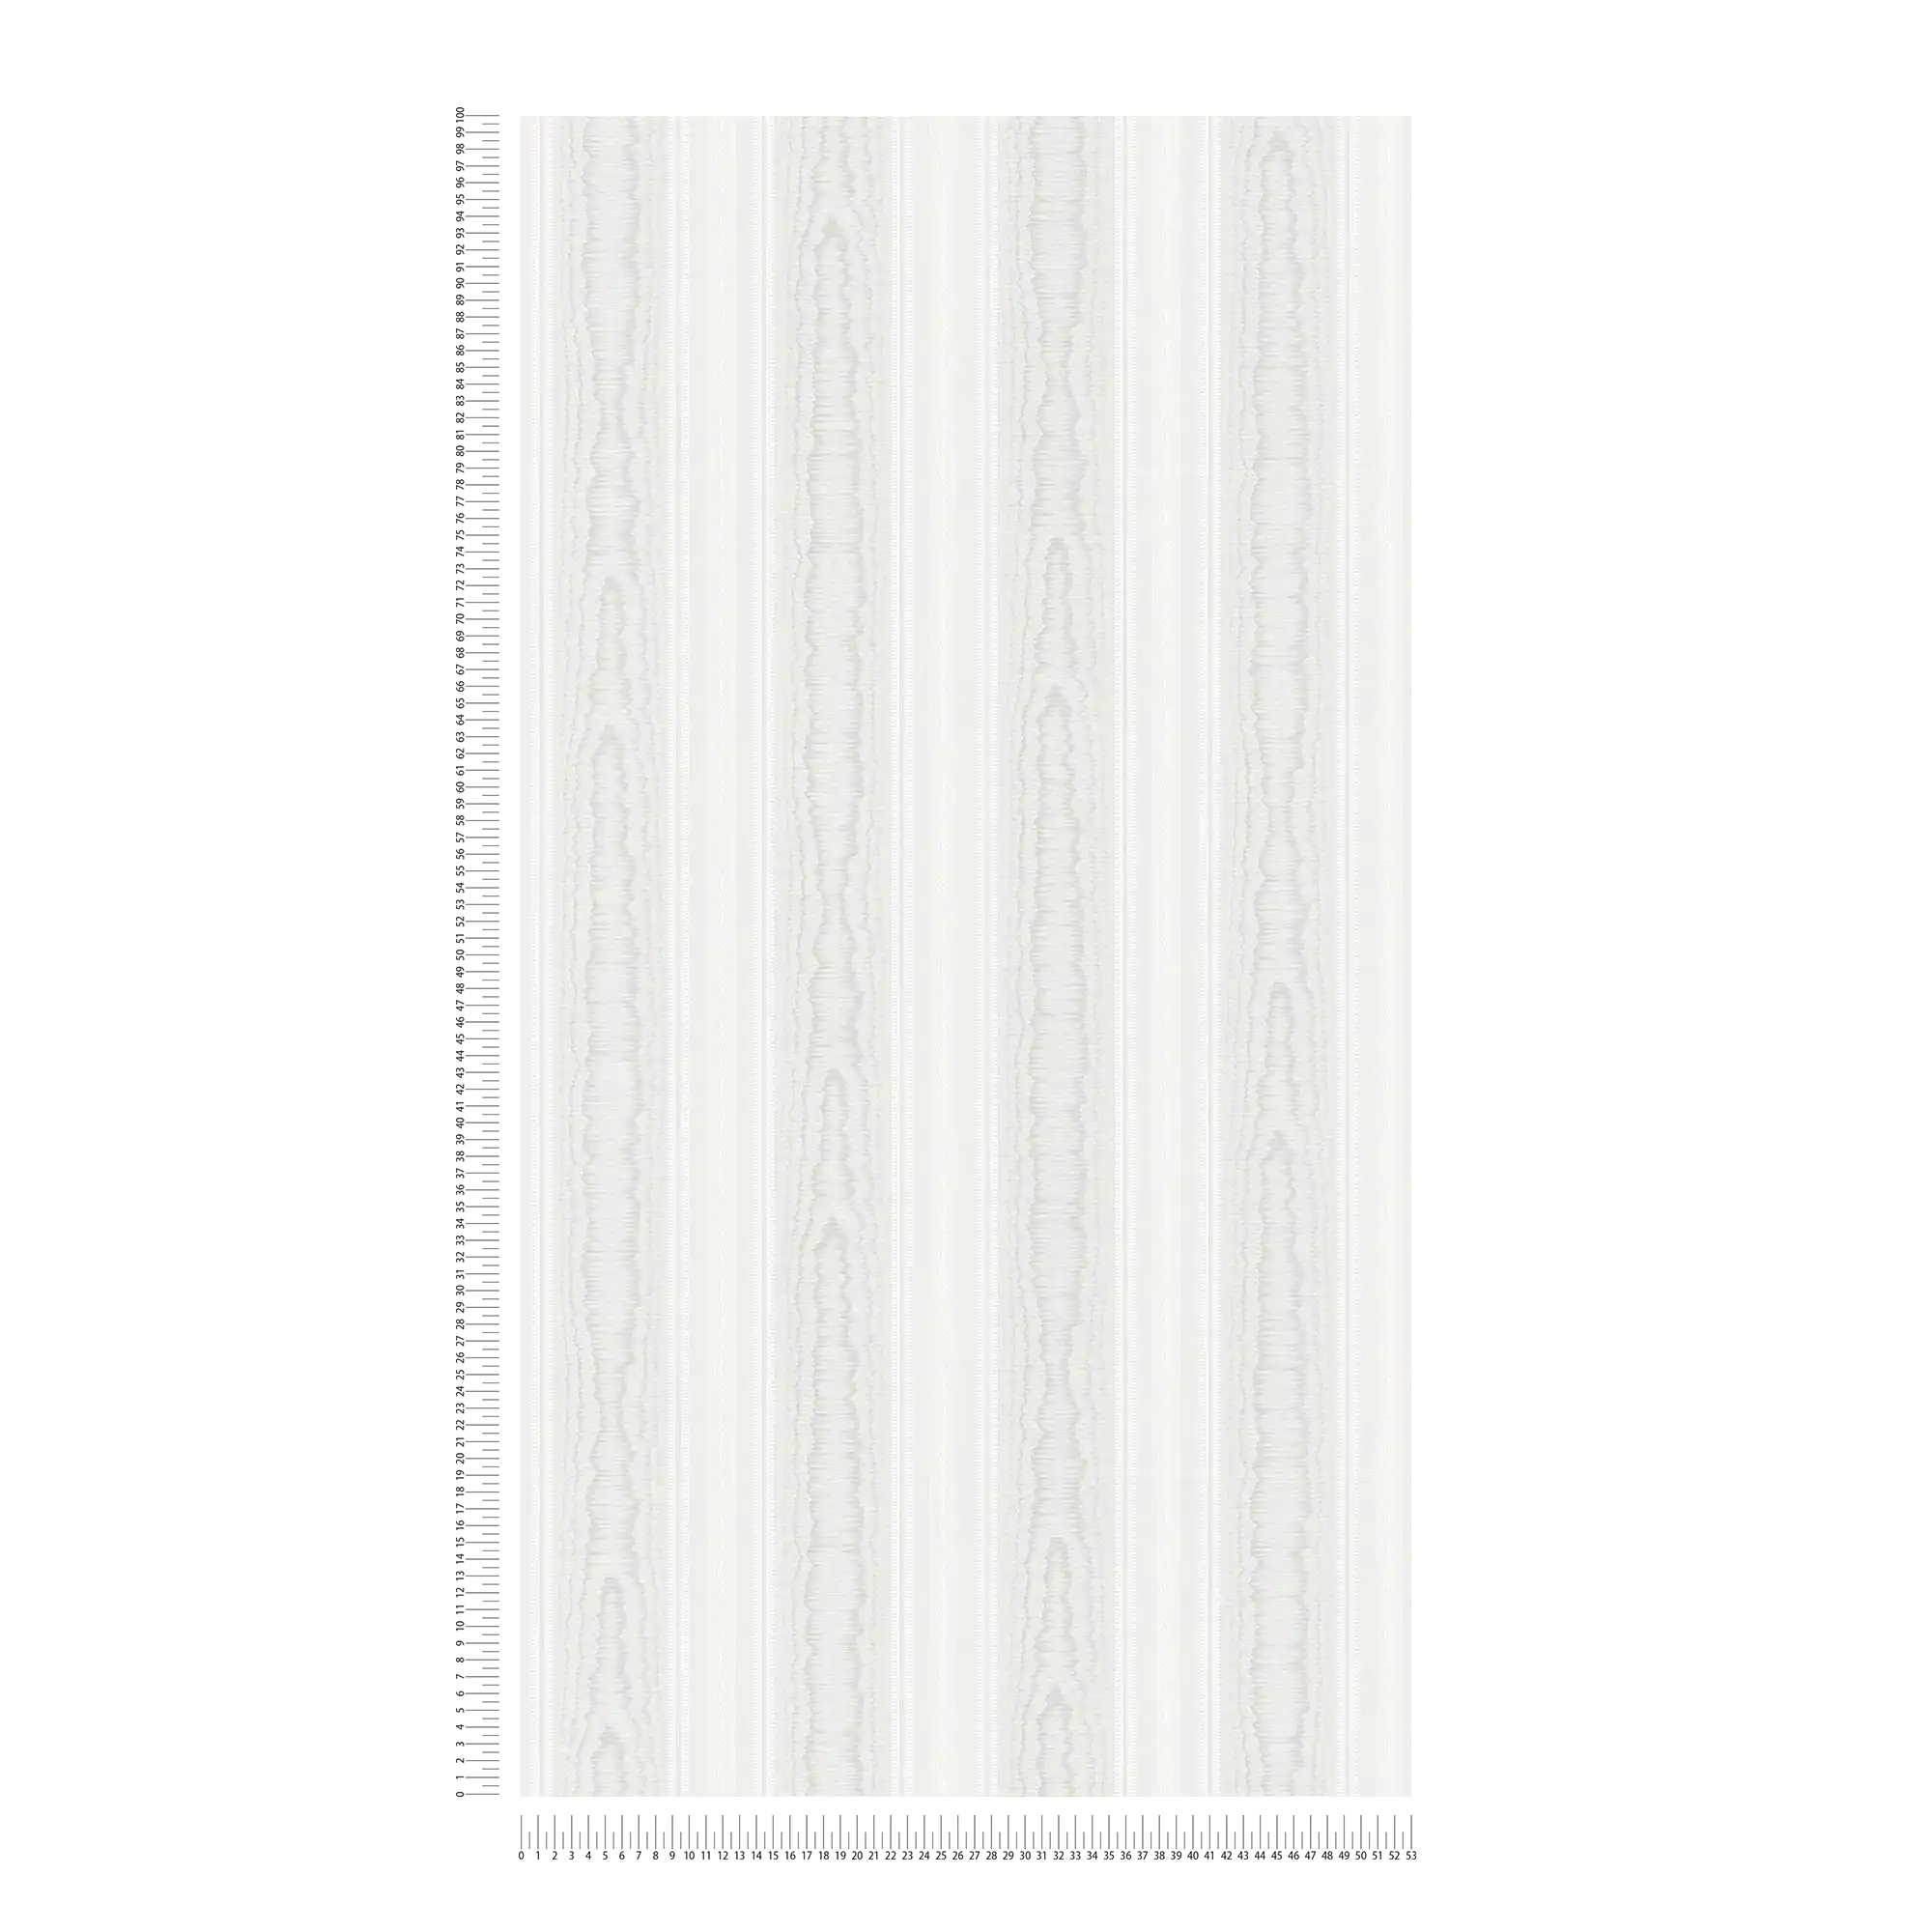             Papel pintado a rayas con aspecto de madera - crema, blanco
        